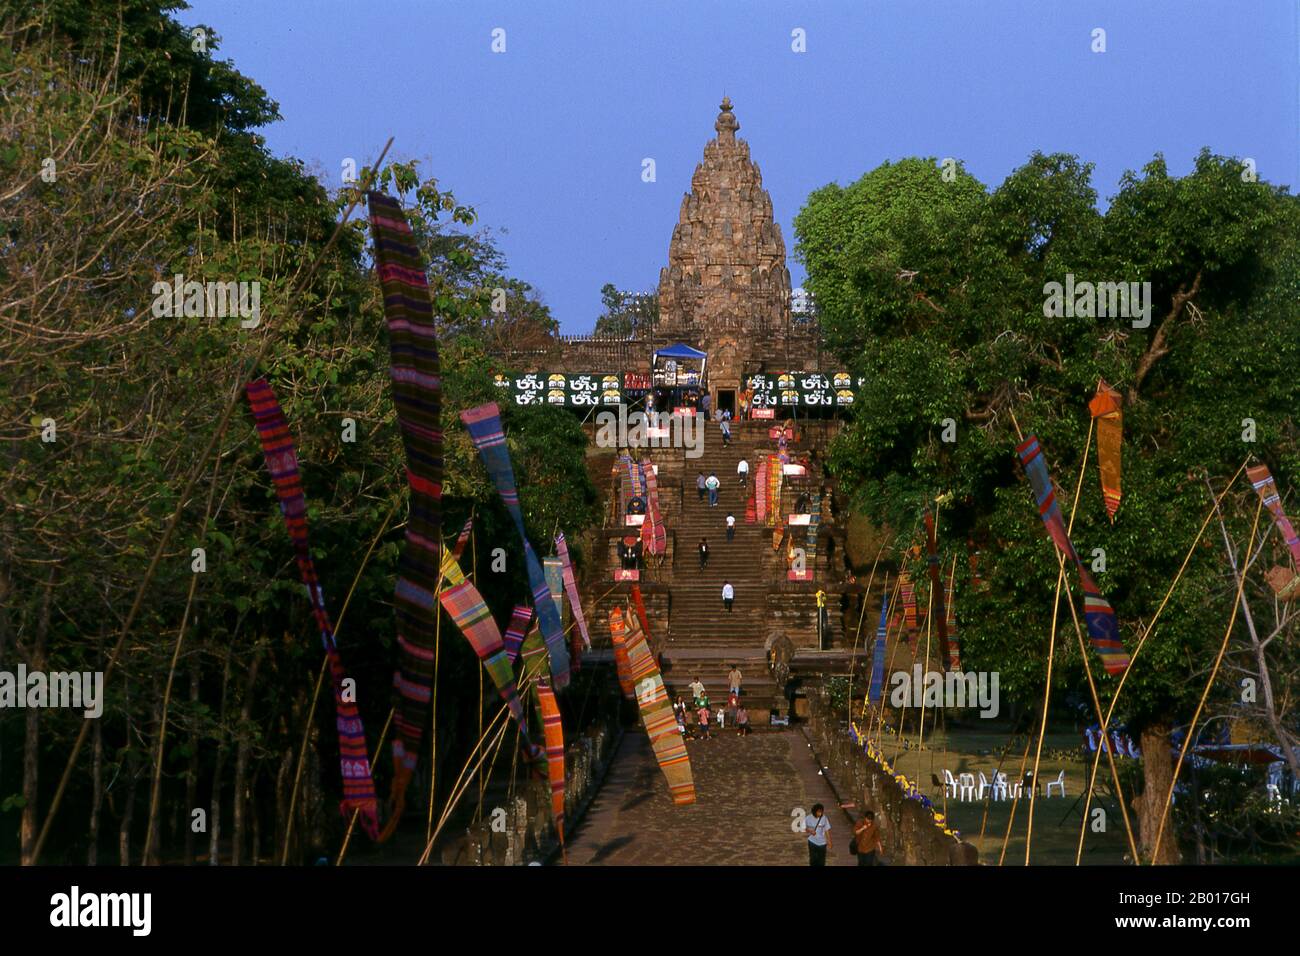 Thaïlande: Escalier en pierre à tête de Naga, Prasat Hin Phanom Rung (château en pierre de Phanom Rung), province de Buriram, nord-est de la Thaïlande.Phanom Rung est un complexe de temples Khmers situé sur le bord d'un volcan éteint à 1 320 pieds au-dessus du niveau de la mer, dans la province de Buriram, dans la région d'Isaan en Thaïlande.Il a été construit en grès et en laterite au cours des 10th à 13th siècles.C'était un sanctuaire hindou dédié à Shiva, et symbolise le Mont Kailash, sa demeure céleste. Banque D'Images